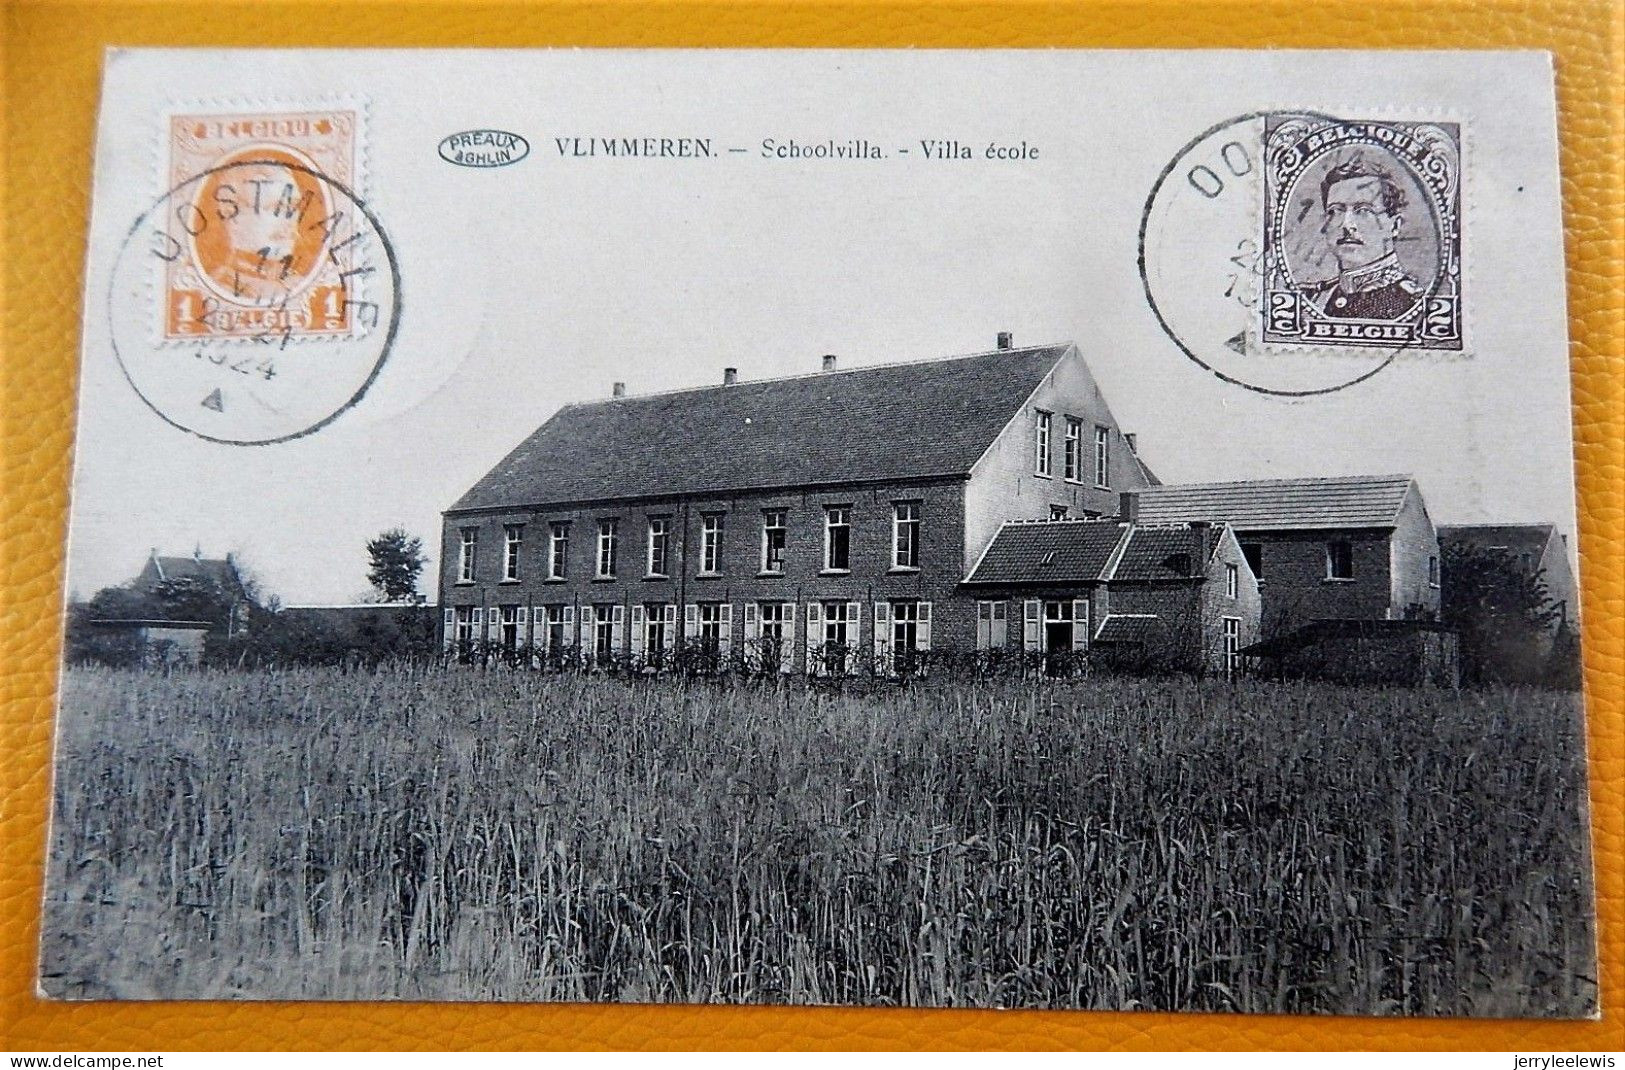 VLIMMEREN  -  Schoolvilla  -  Villa école  - 1921 - Beerse